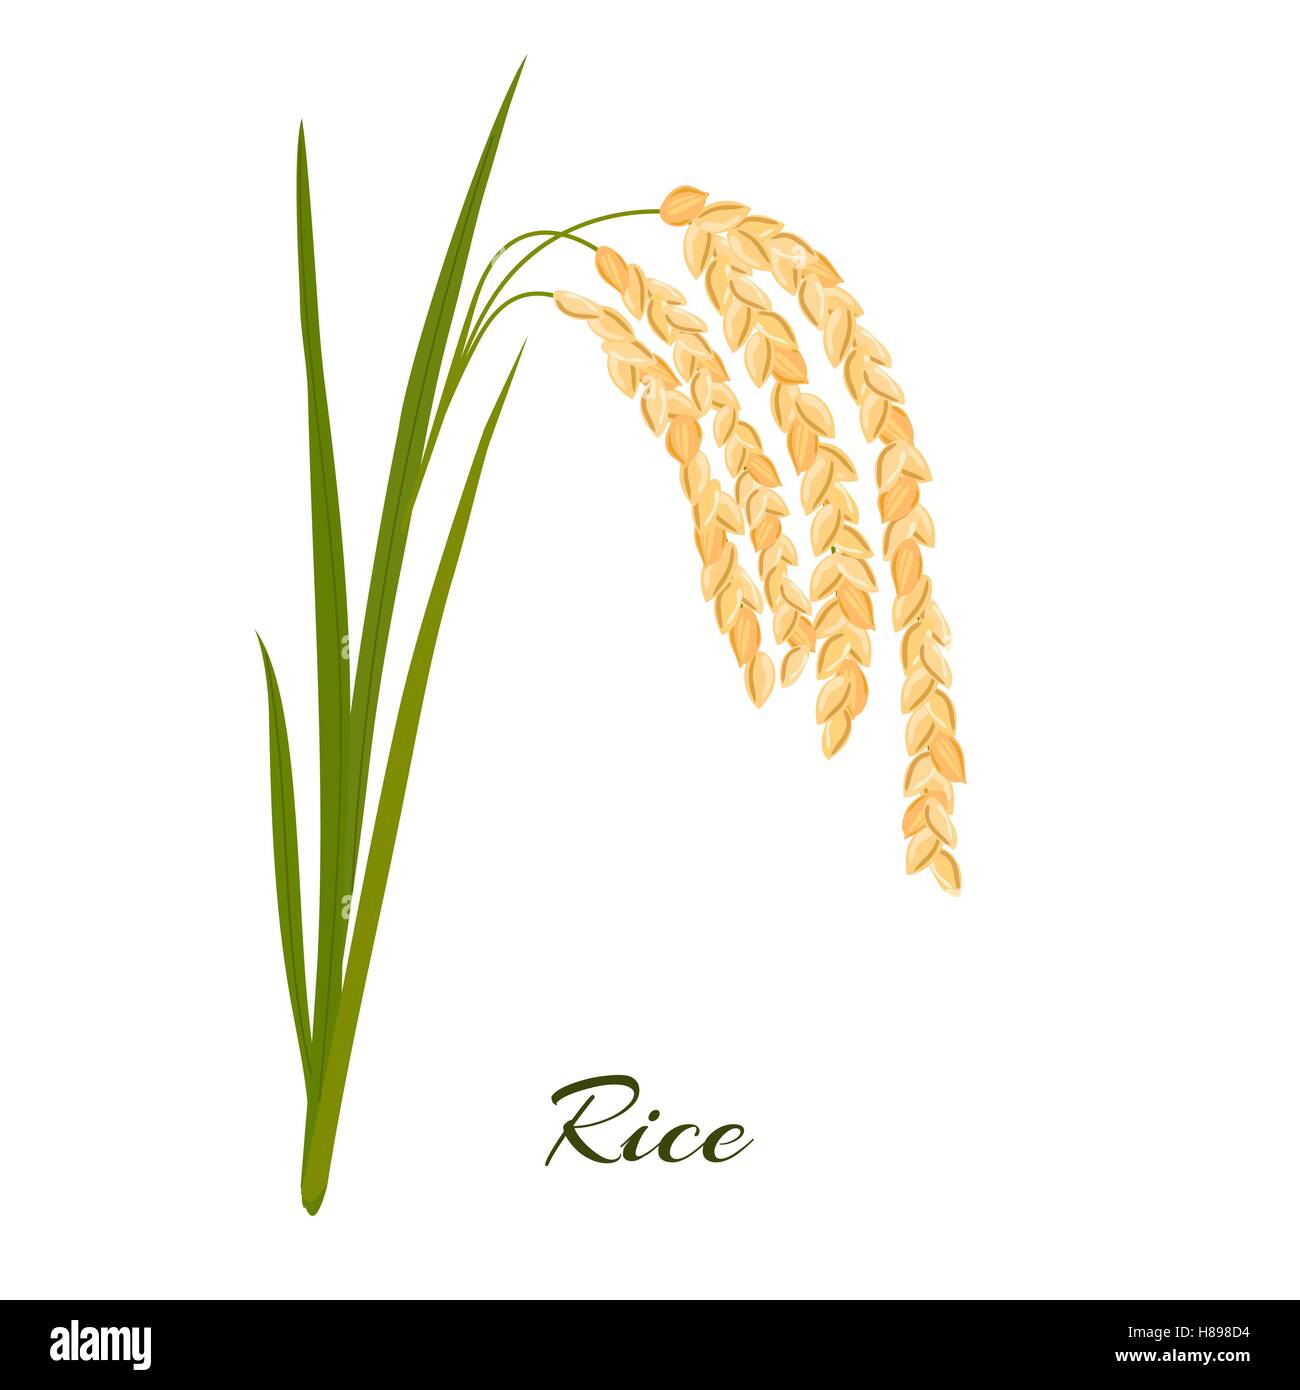 Le riz. Les feuilles et les épillets de riz sur un fond blanc. Vector illustration. Eps 10. Illustration de Vecteur